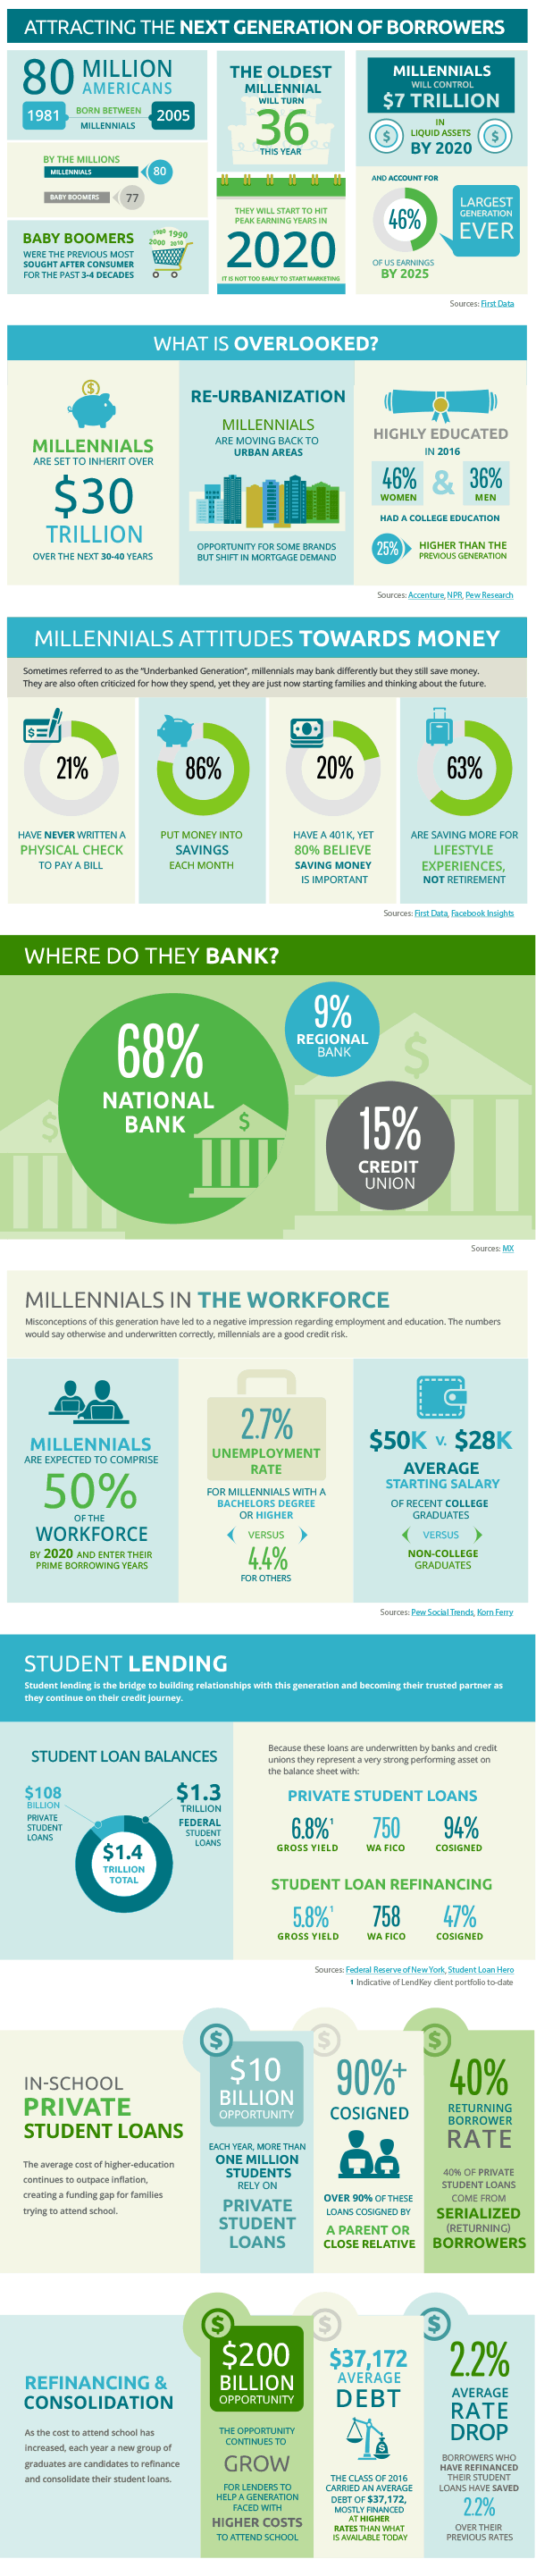 Lending to Millennials